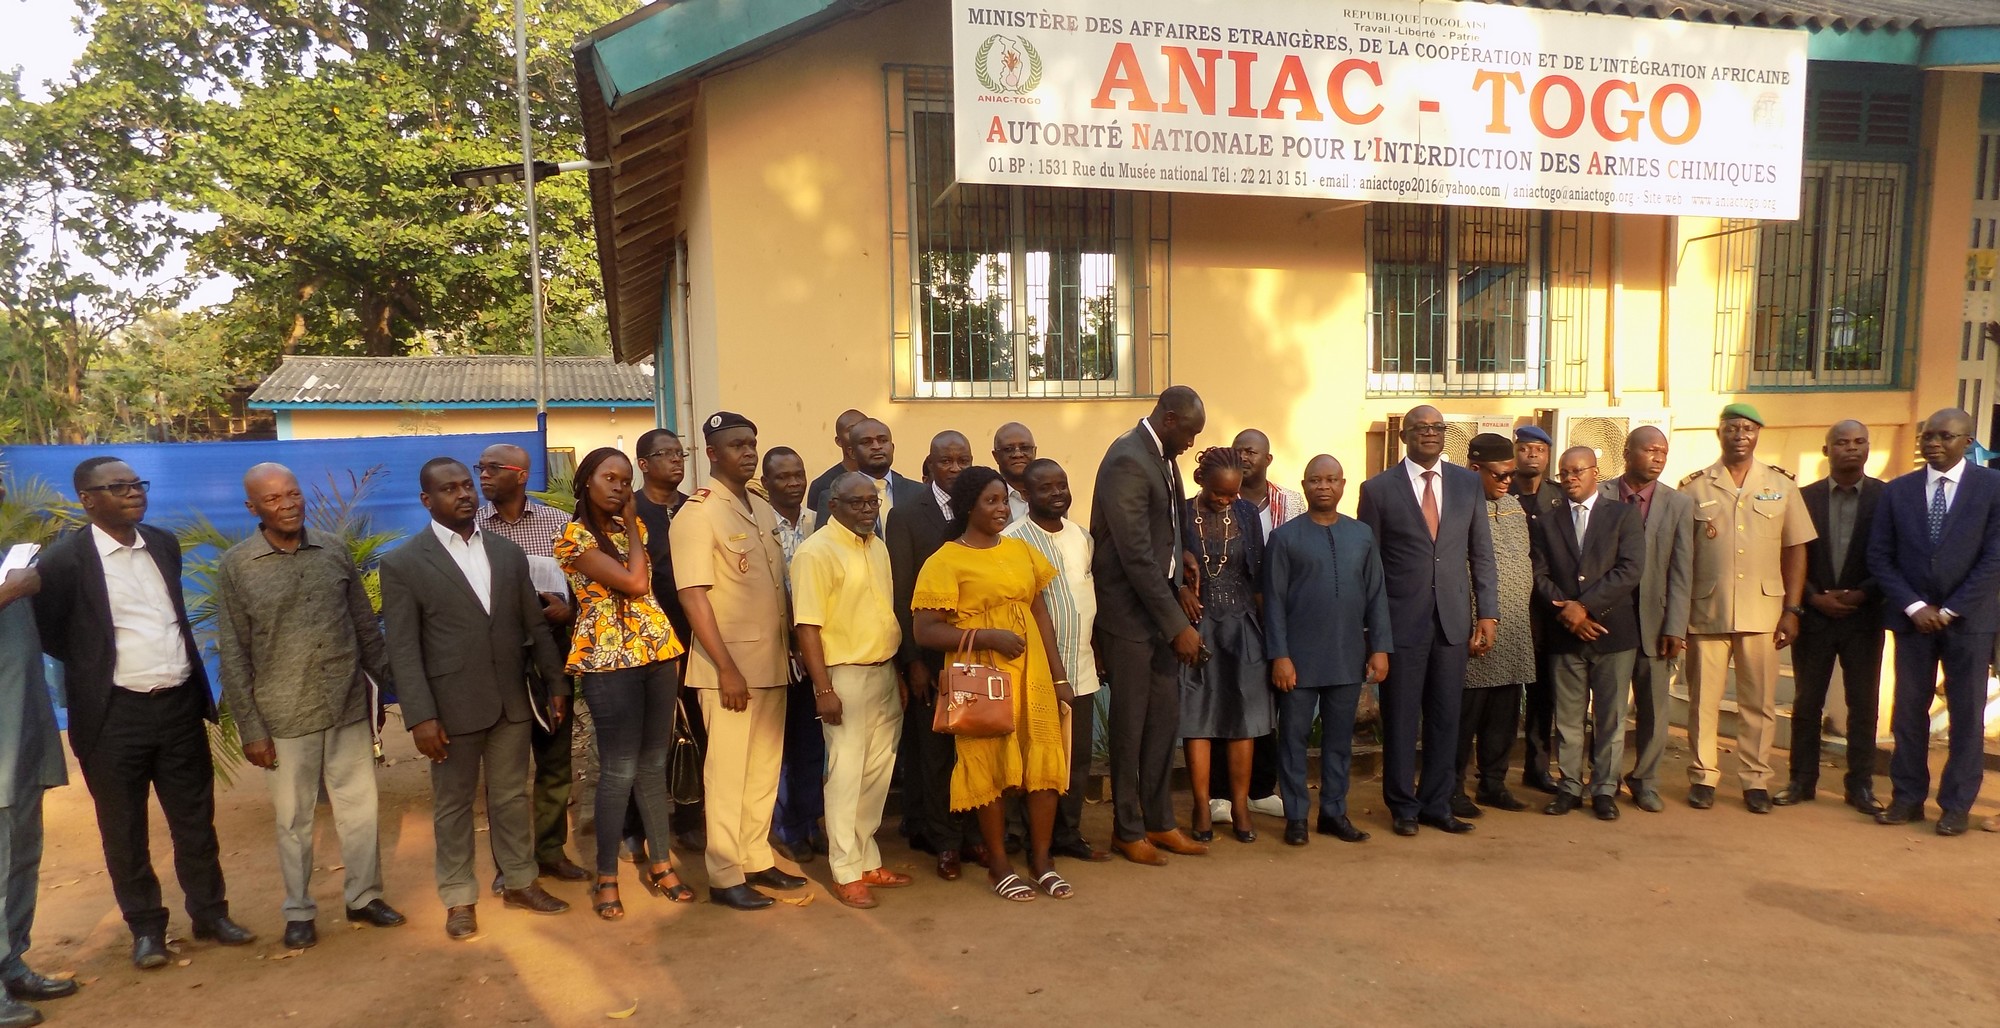 Bilan 2022 des activités de l’ANIAC Togo et projections sur l’année 2023